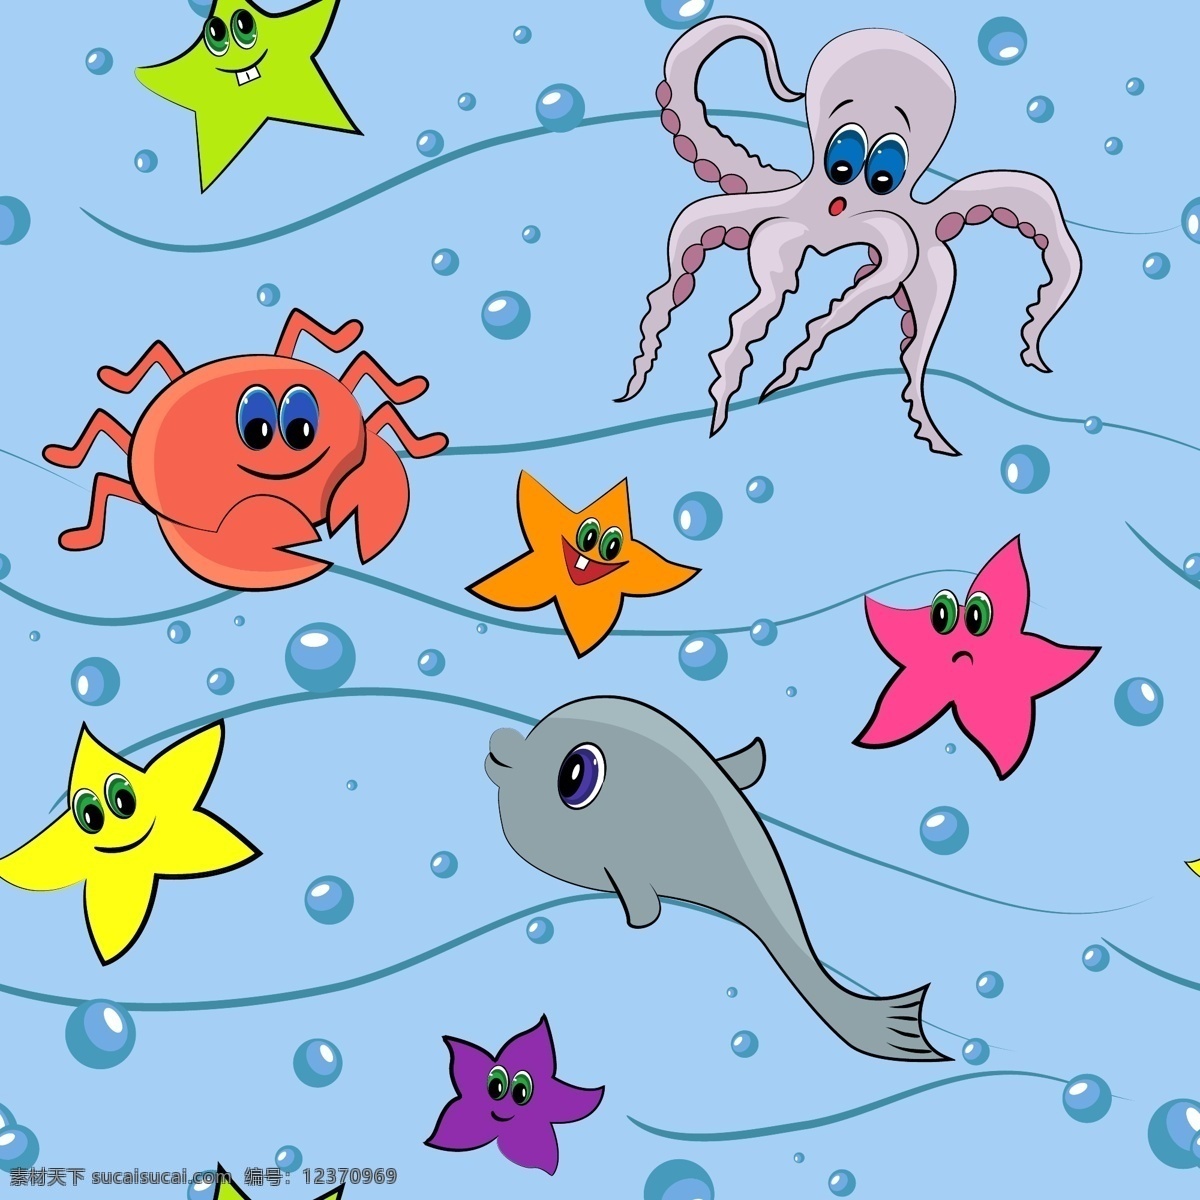 儿童卡通插画 矢量 卡通 插画 线稿 动物 人物 儿童 手绘 海洋 螃蟹 章鱼 乌贼 海豚 海底世界 卡通设计